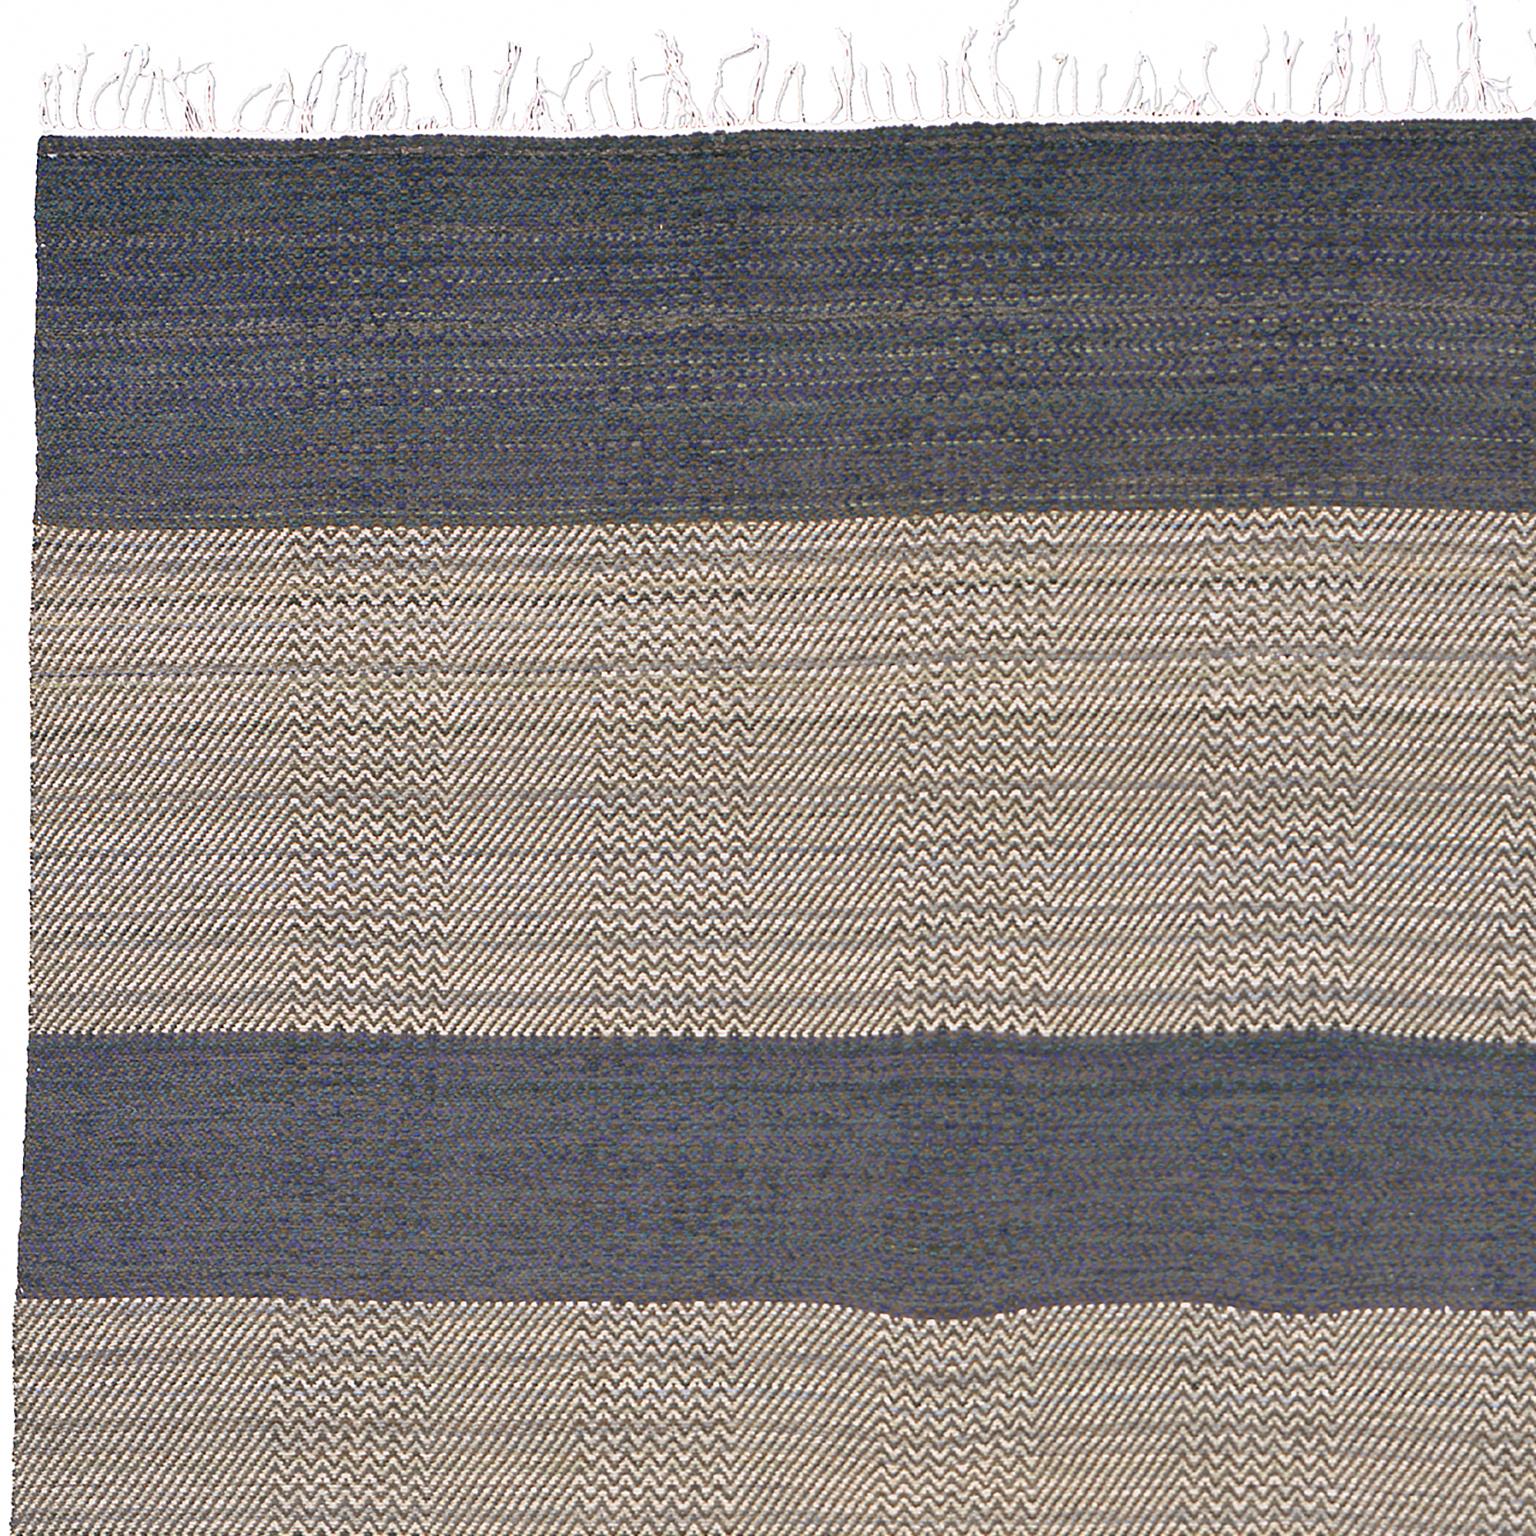 Hand-Woven Swedish Flat Weave Rug by Gunilla Lagerbielke For Sale